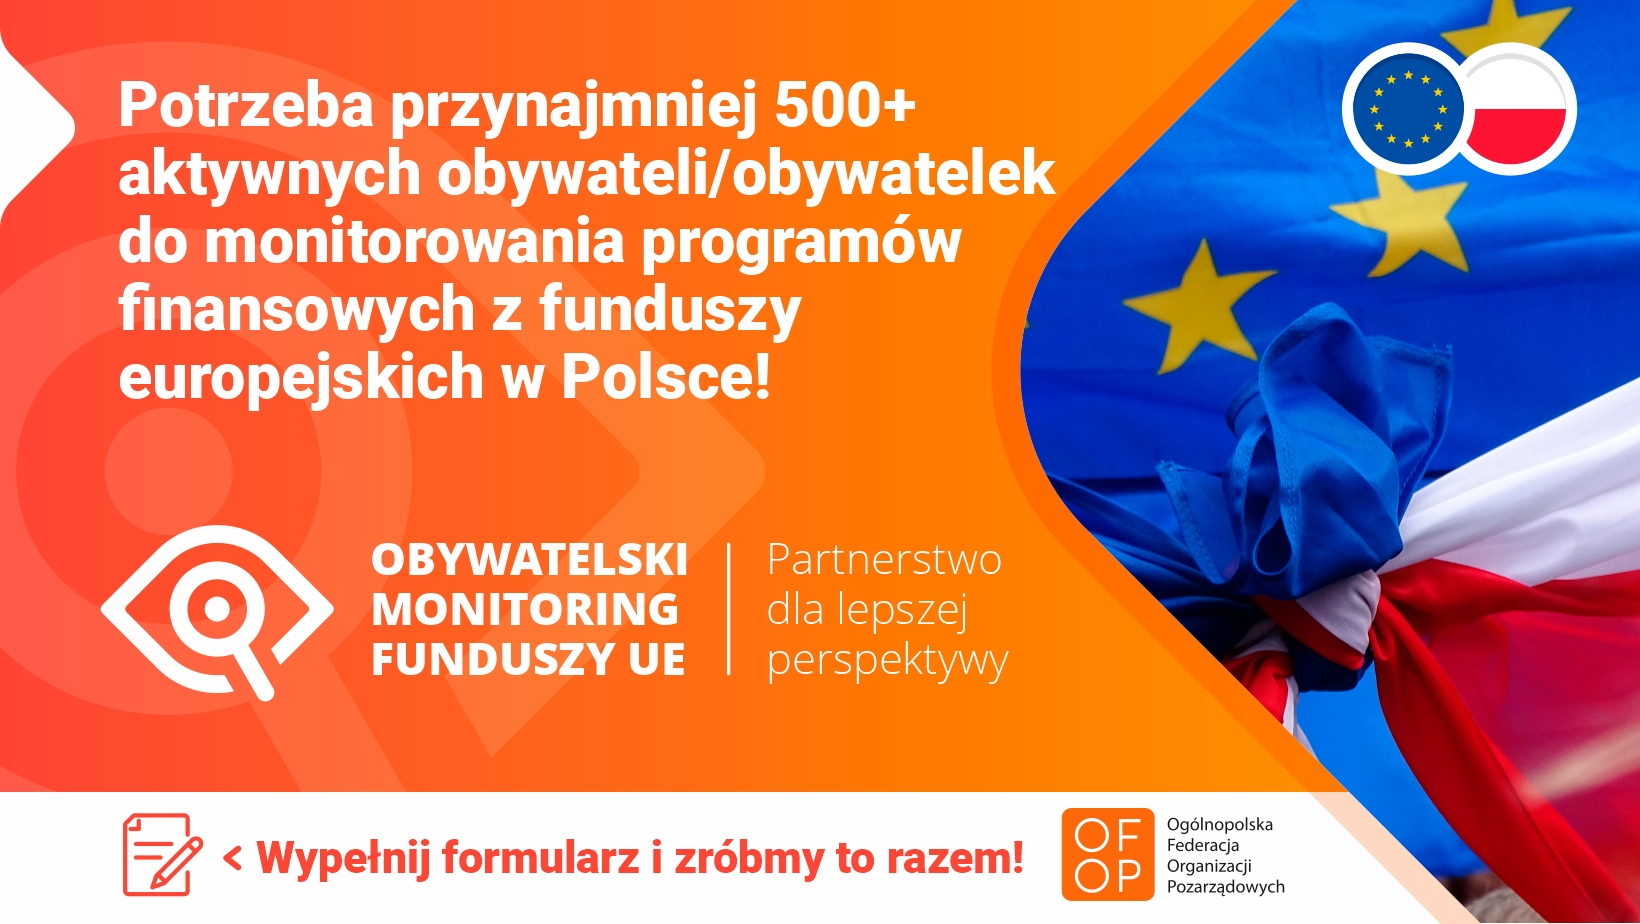 Na pomarańczowym tle biały napis: Potrzeba przynajmniej 500+ aktywnych obywateli/obywatelek do monitorowania programów finansowych z funduszy europejskich w Polsce! Poniżej logotyp: Obywatelski Monitoring Funduszy UE| Partnerstwo dla lepszej perspektywy Poniżej na białym tle pomarańczowy napis: Wypełnij formularz i zróbmy to razem! Po prawej zdjęcie związanych w pętlę flag Unii Europejskiej i Polski